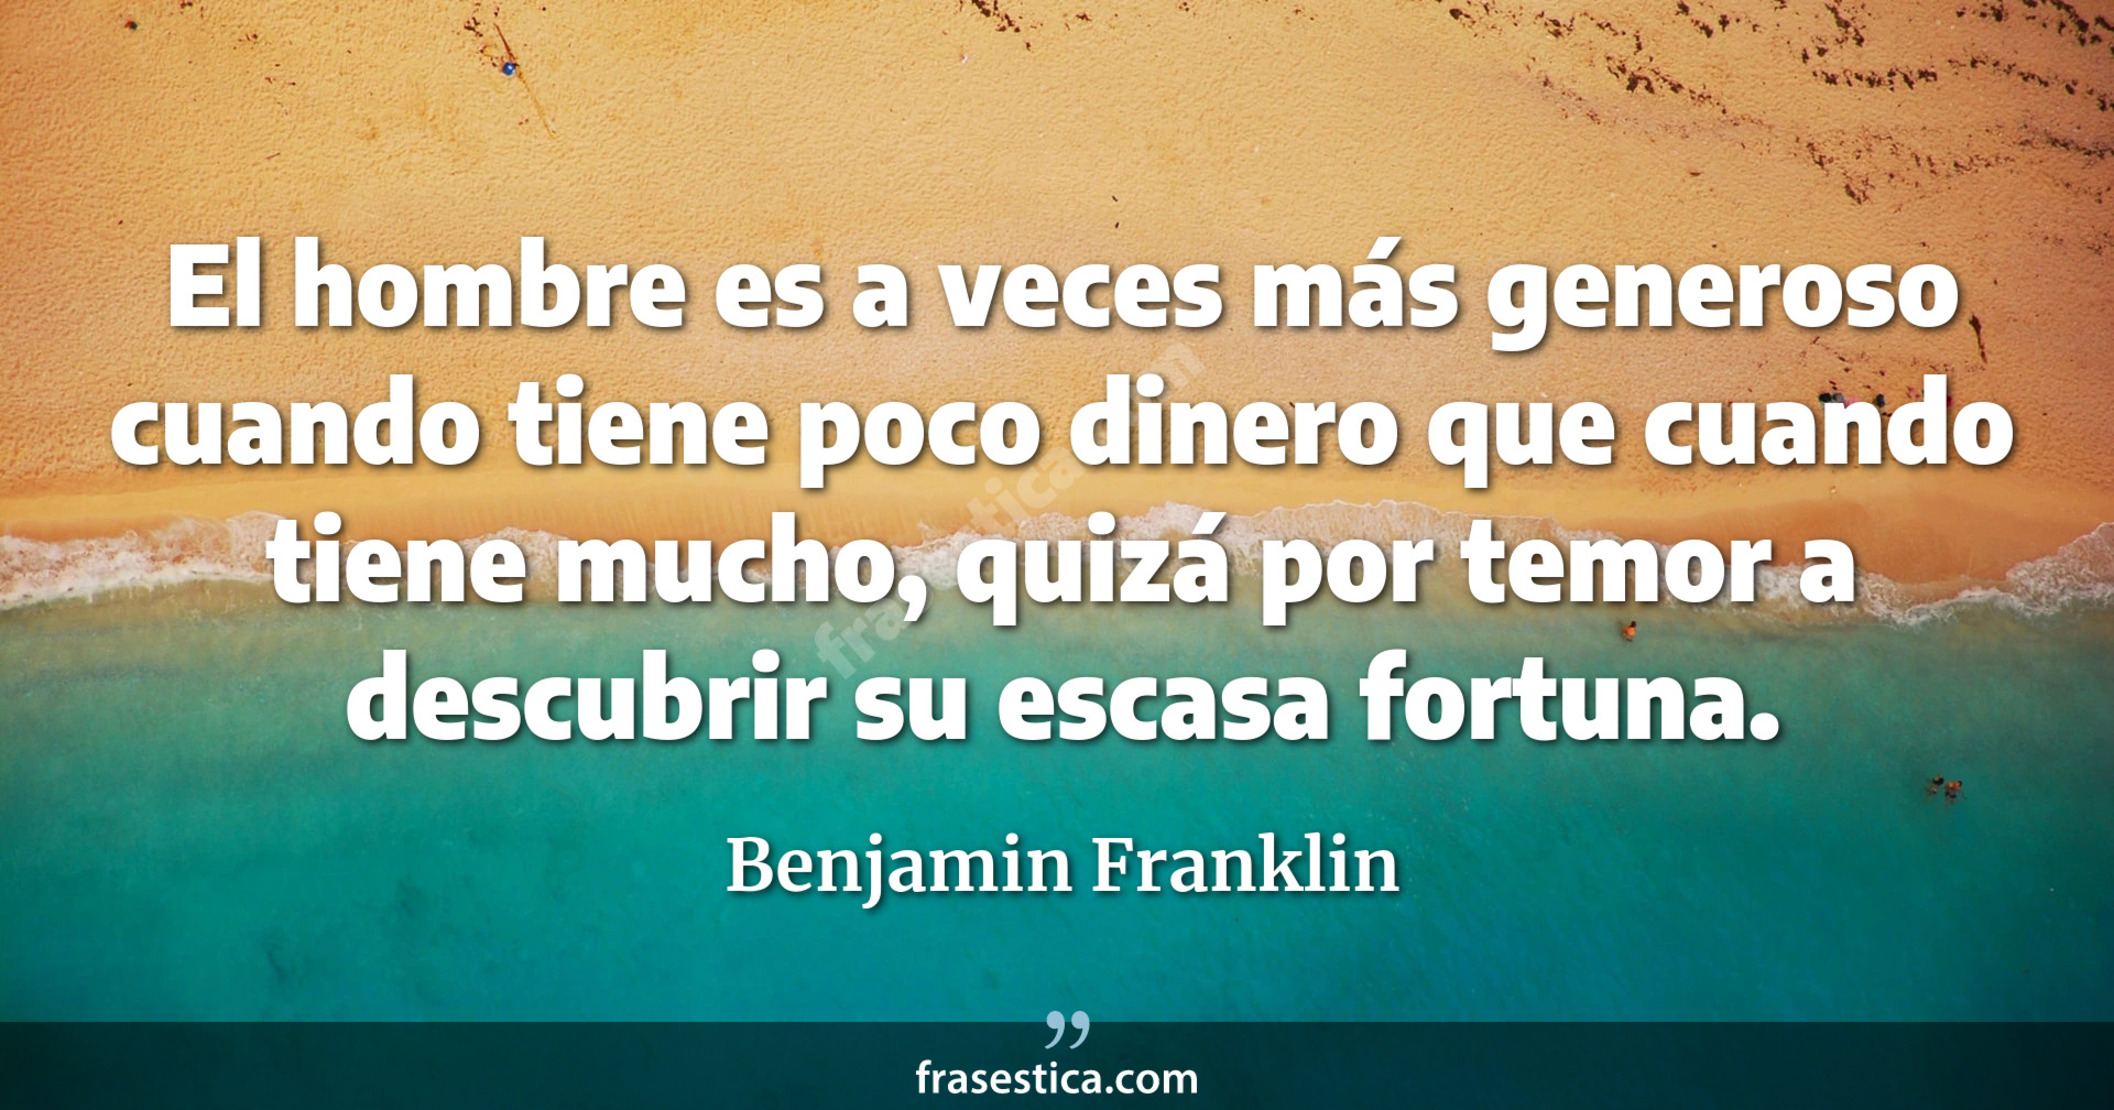 El hombre es a veces más generoso cuando tiene poco dinero que cuando tiene mucho, quizá por temor a descubrir su escasa fortuna. - Benjamin Franklin